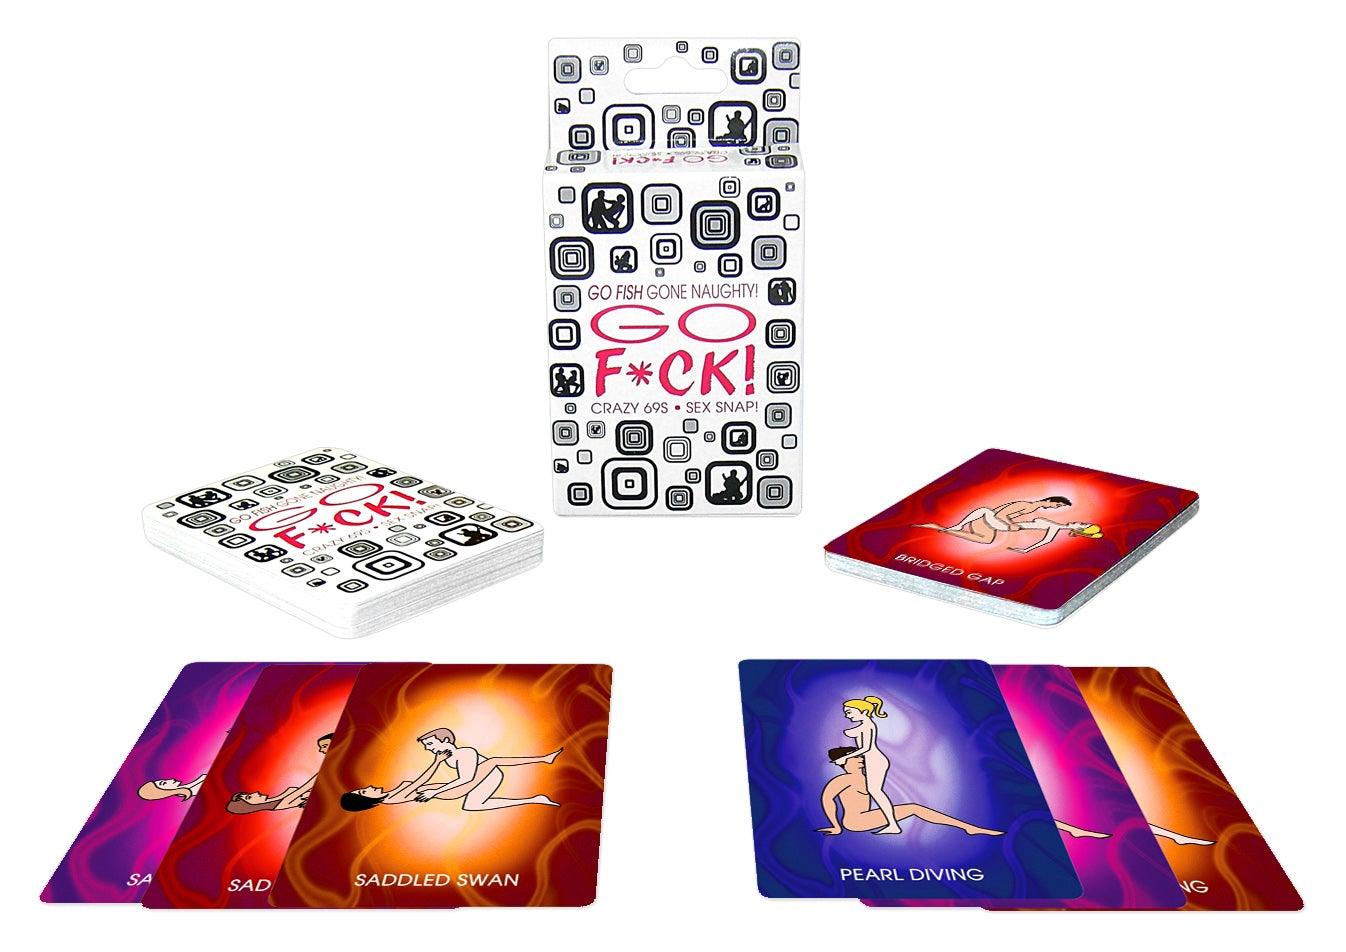 Go F*ck Card Game - Take A Peek